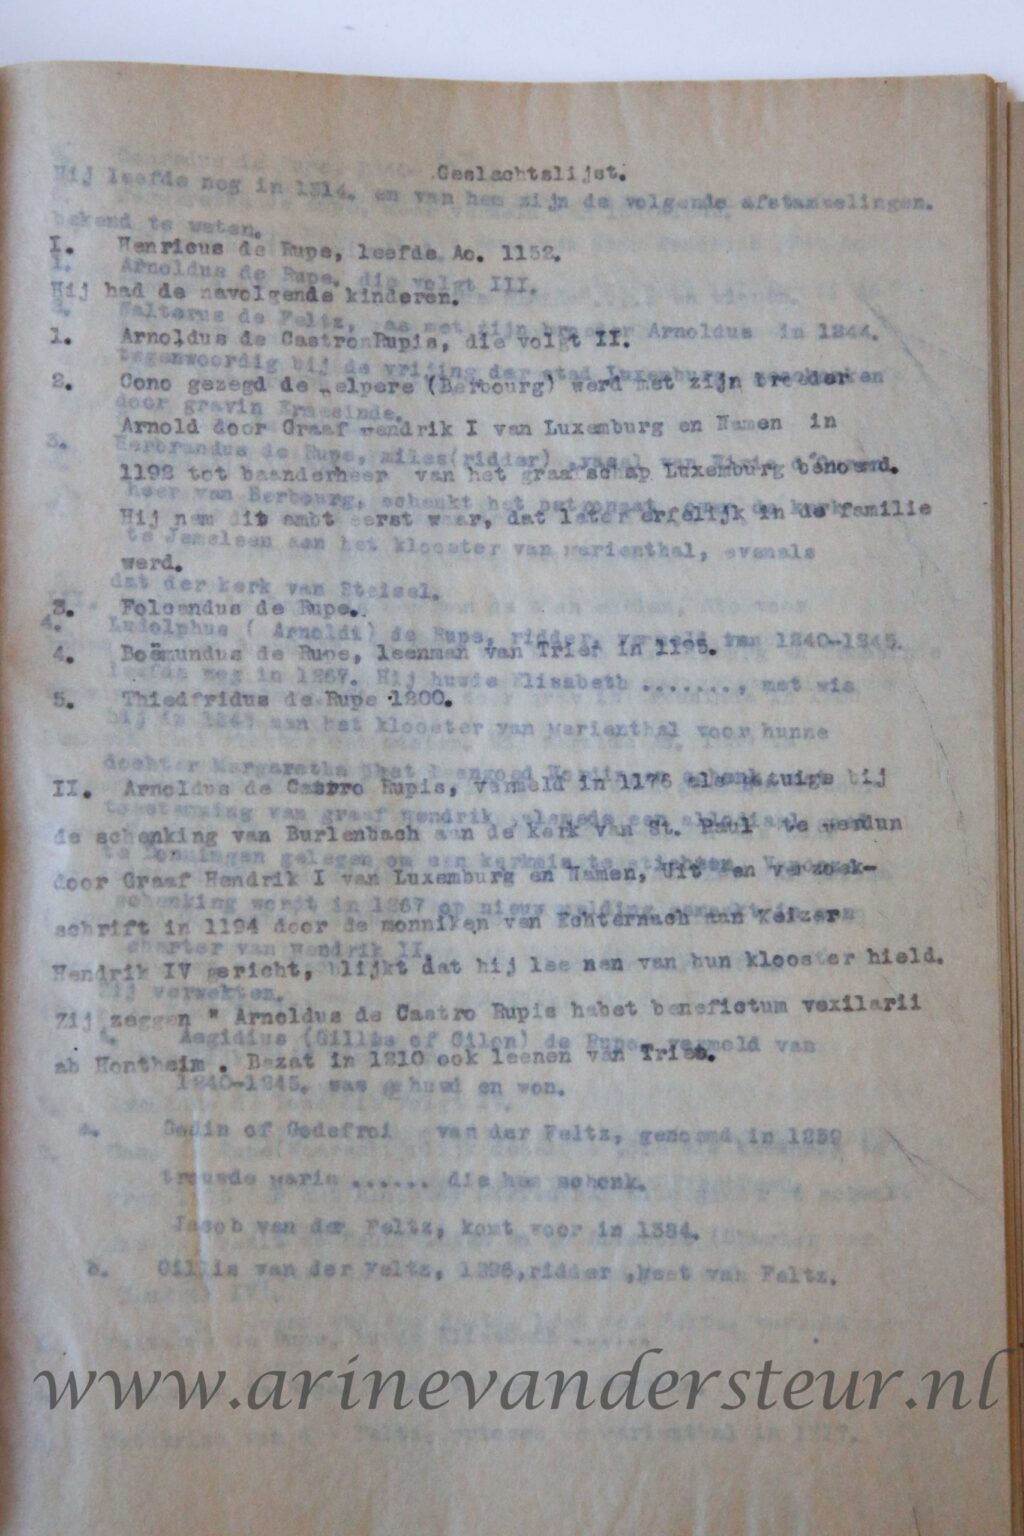 Genealogie van het geslacht Van der Feltz, met bewijsstukken, 's- Gravenhage 1891, 37 pag., getypt, geb.